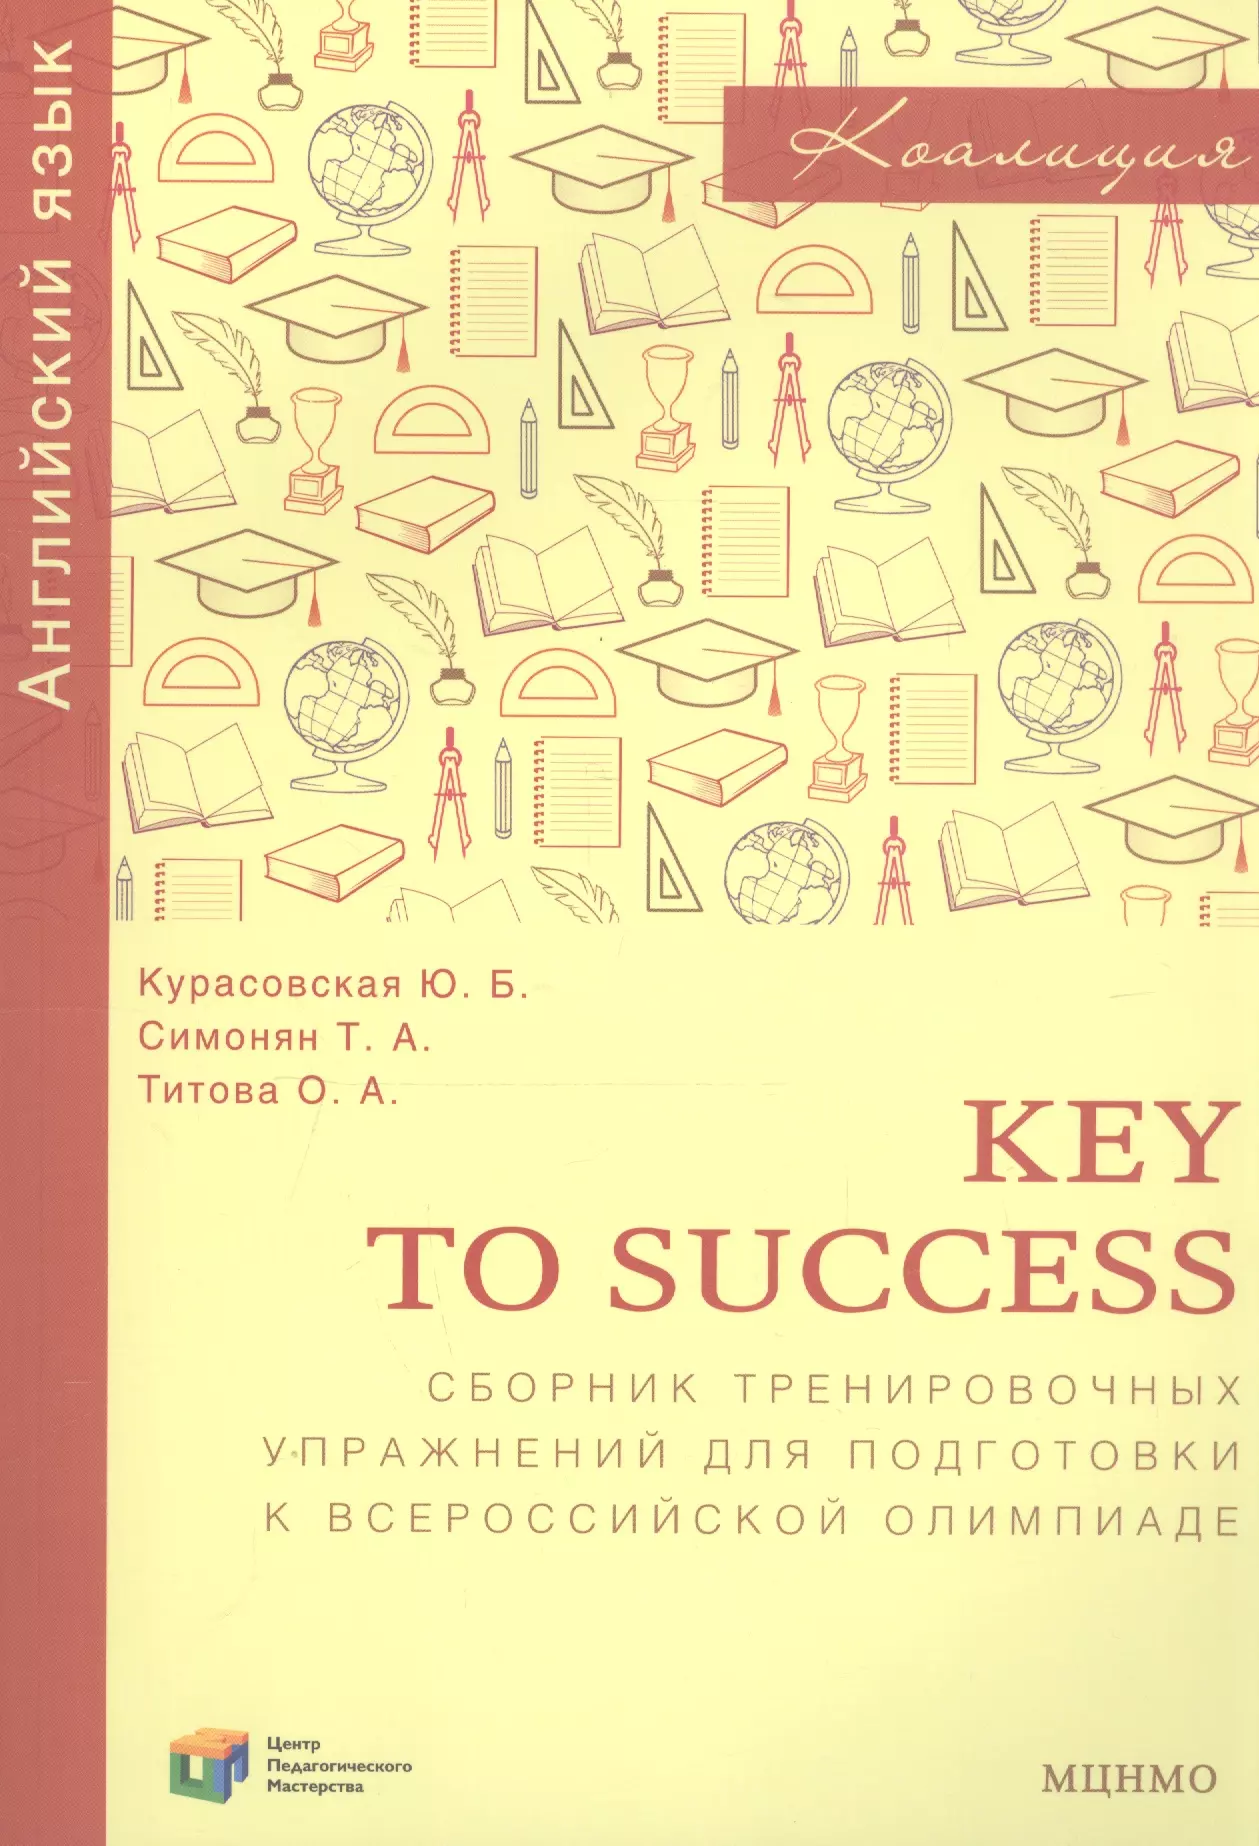 key to success сборник тренировочных упражнений для подготовки к всероссийской олимпиаде по английскому языку Key to success. Сборник тренировочных упражнений для подготовки к всероссийской олимпиаде по английскому языку